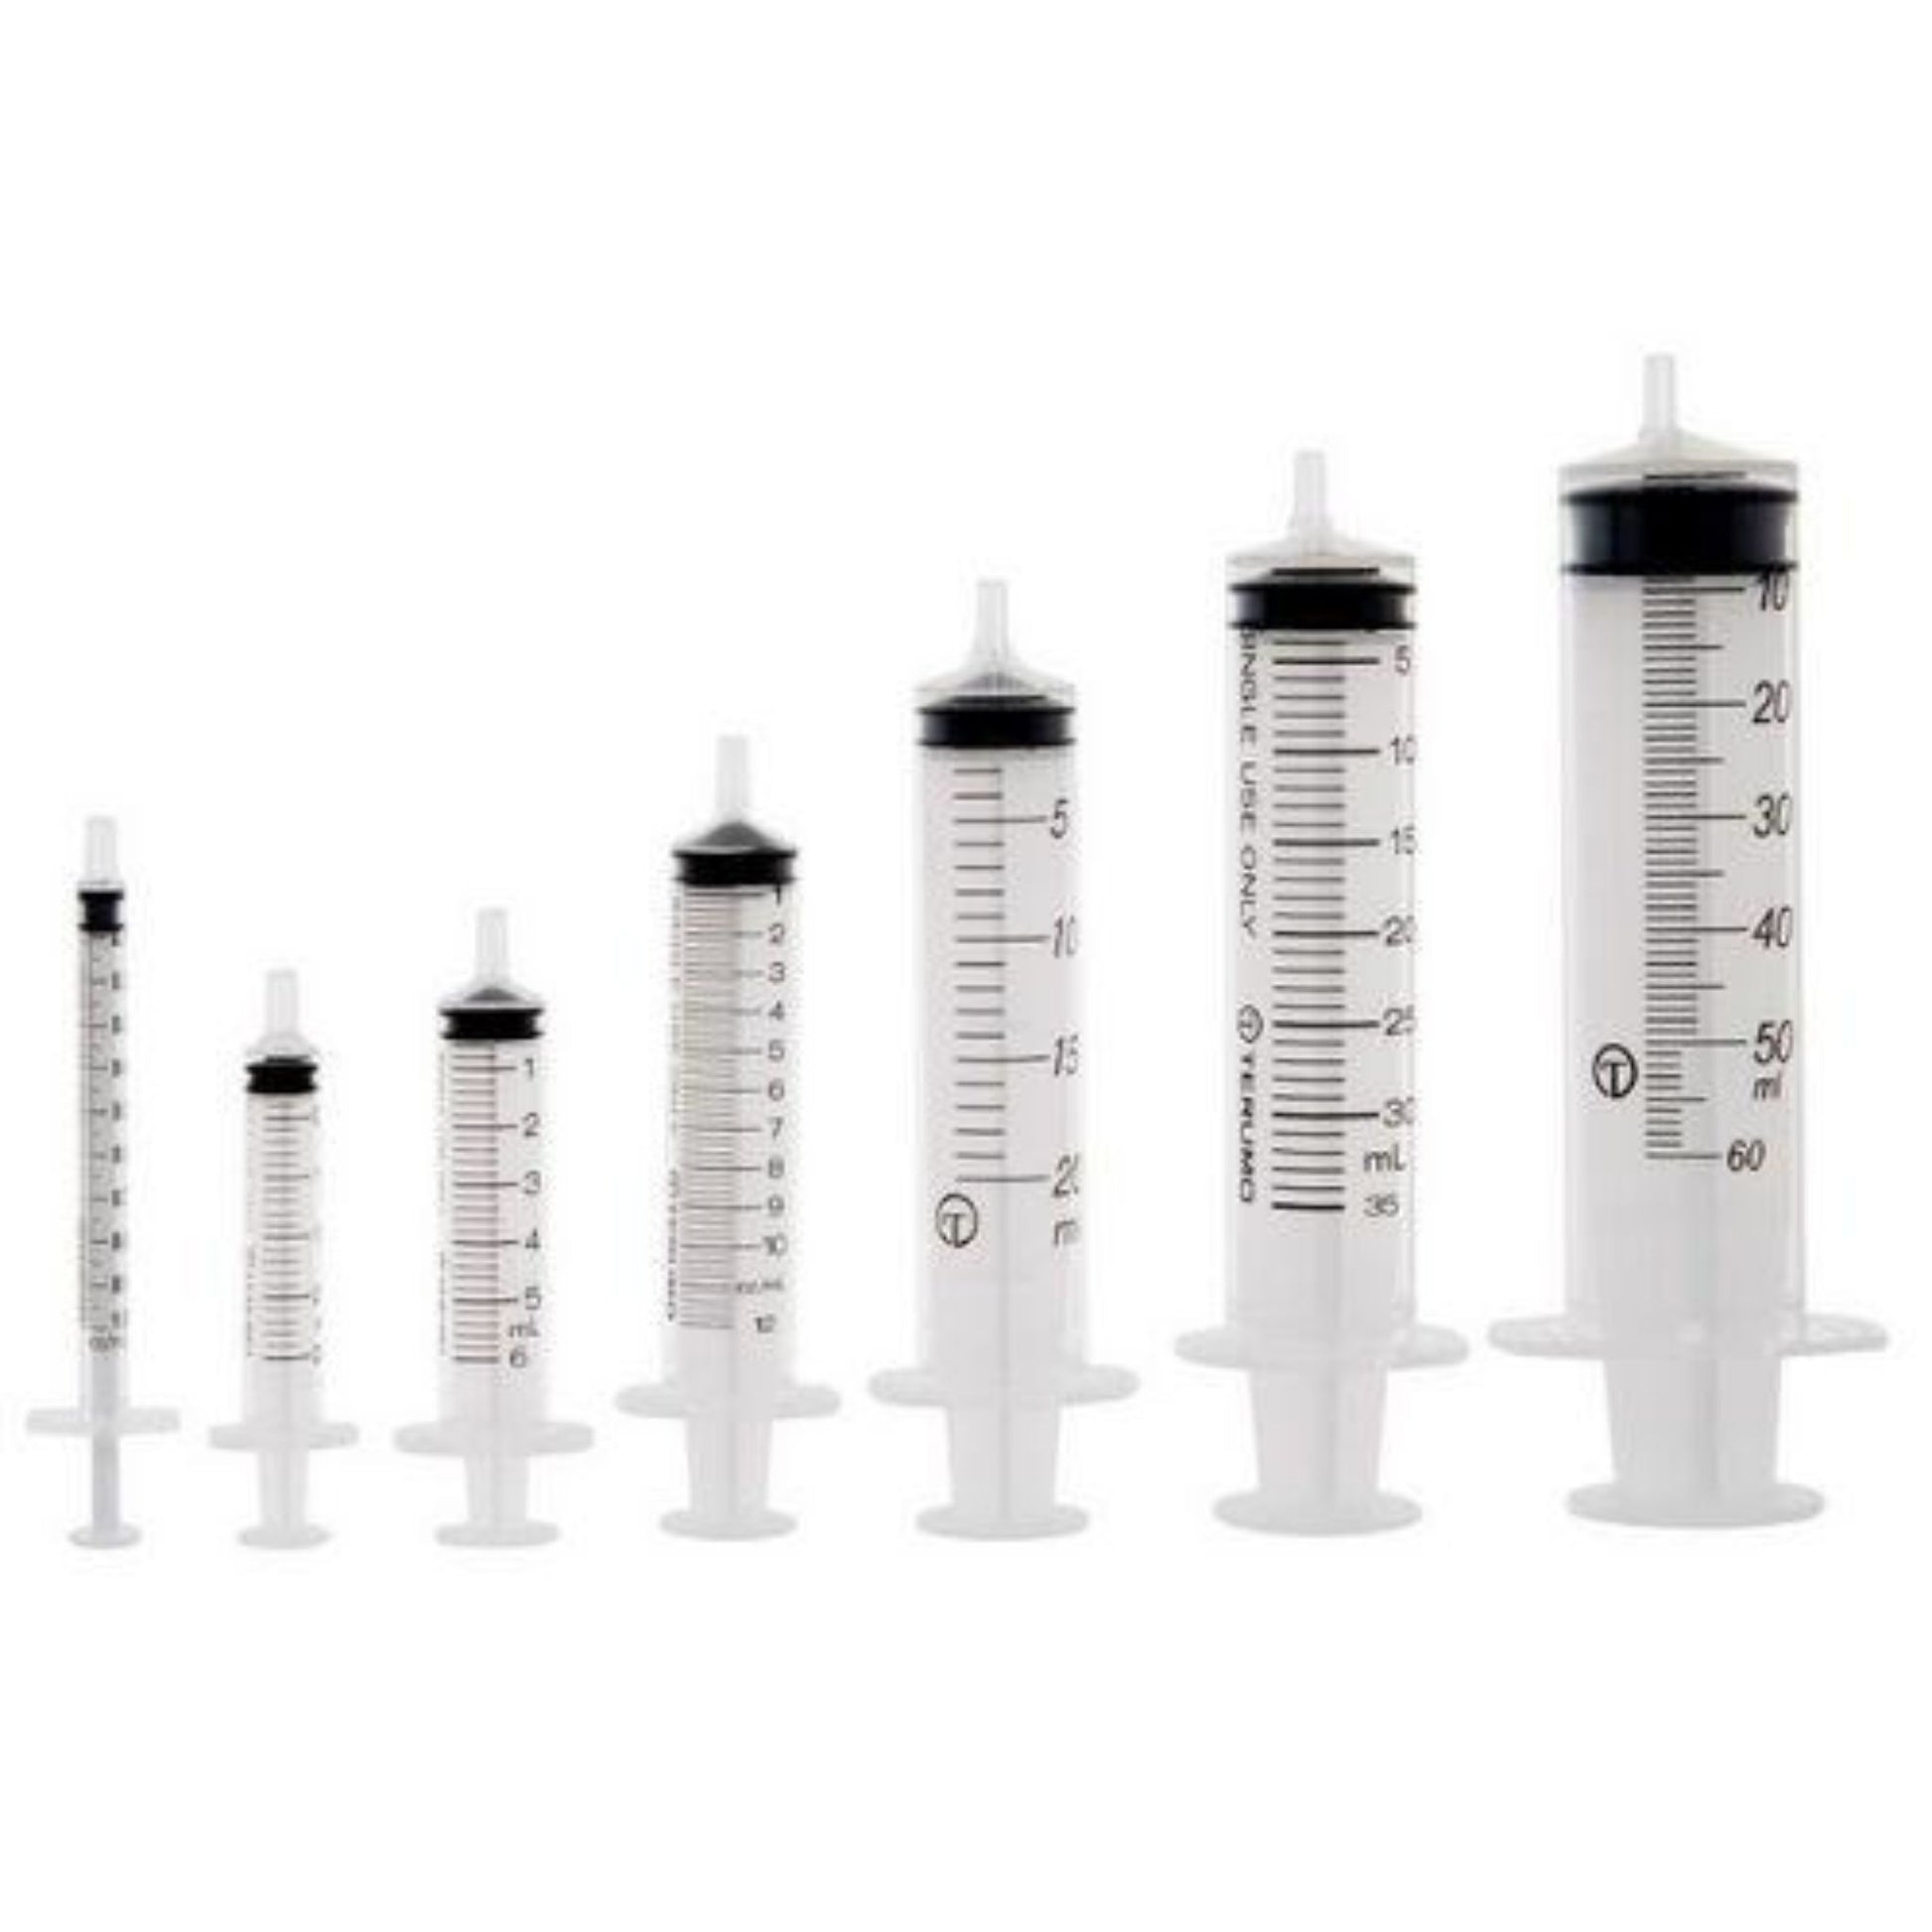 DIY E-Liquid Syringes